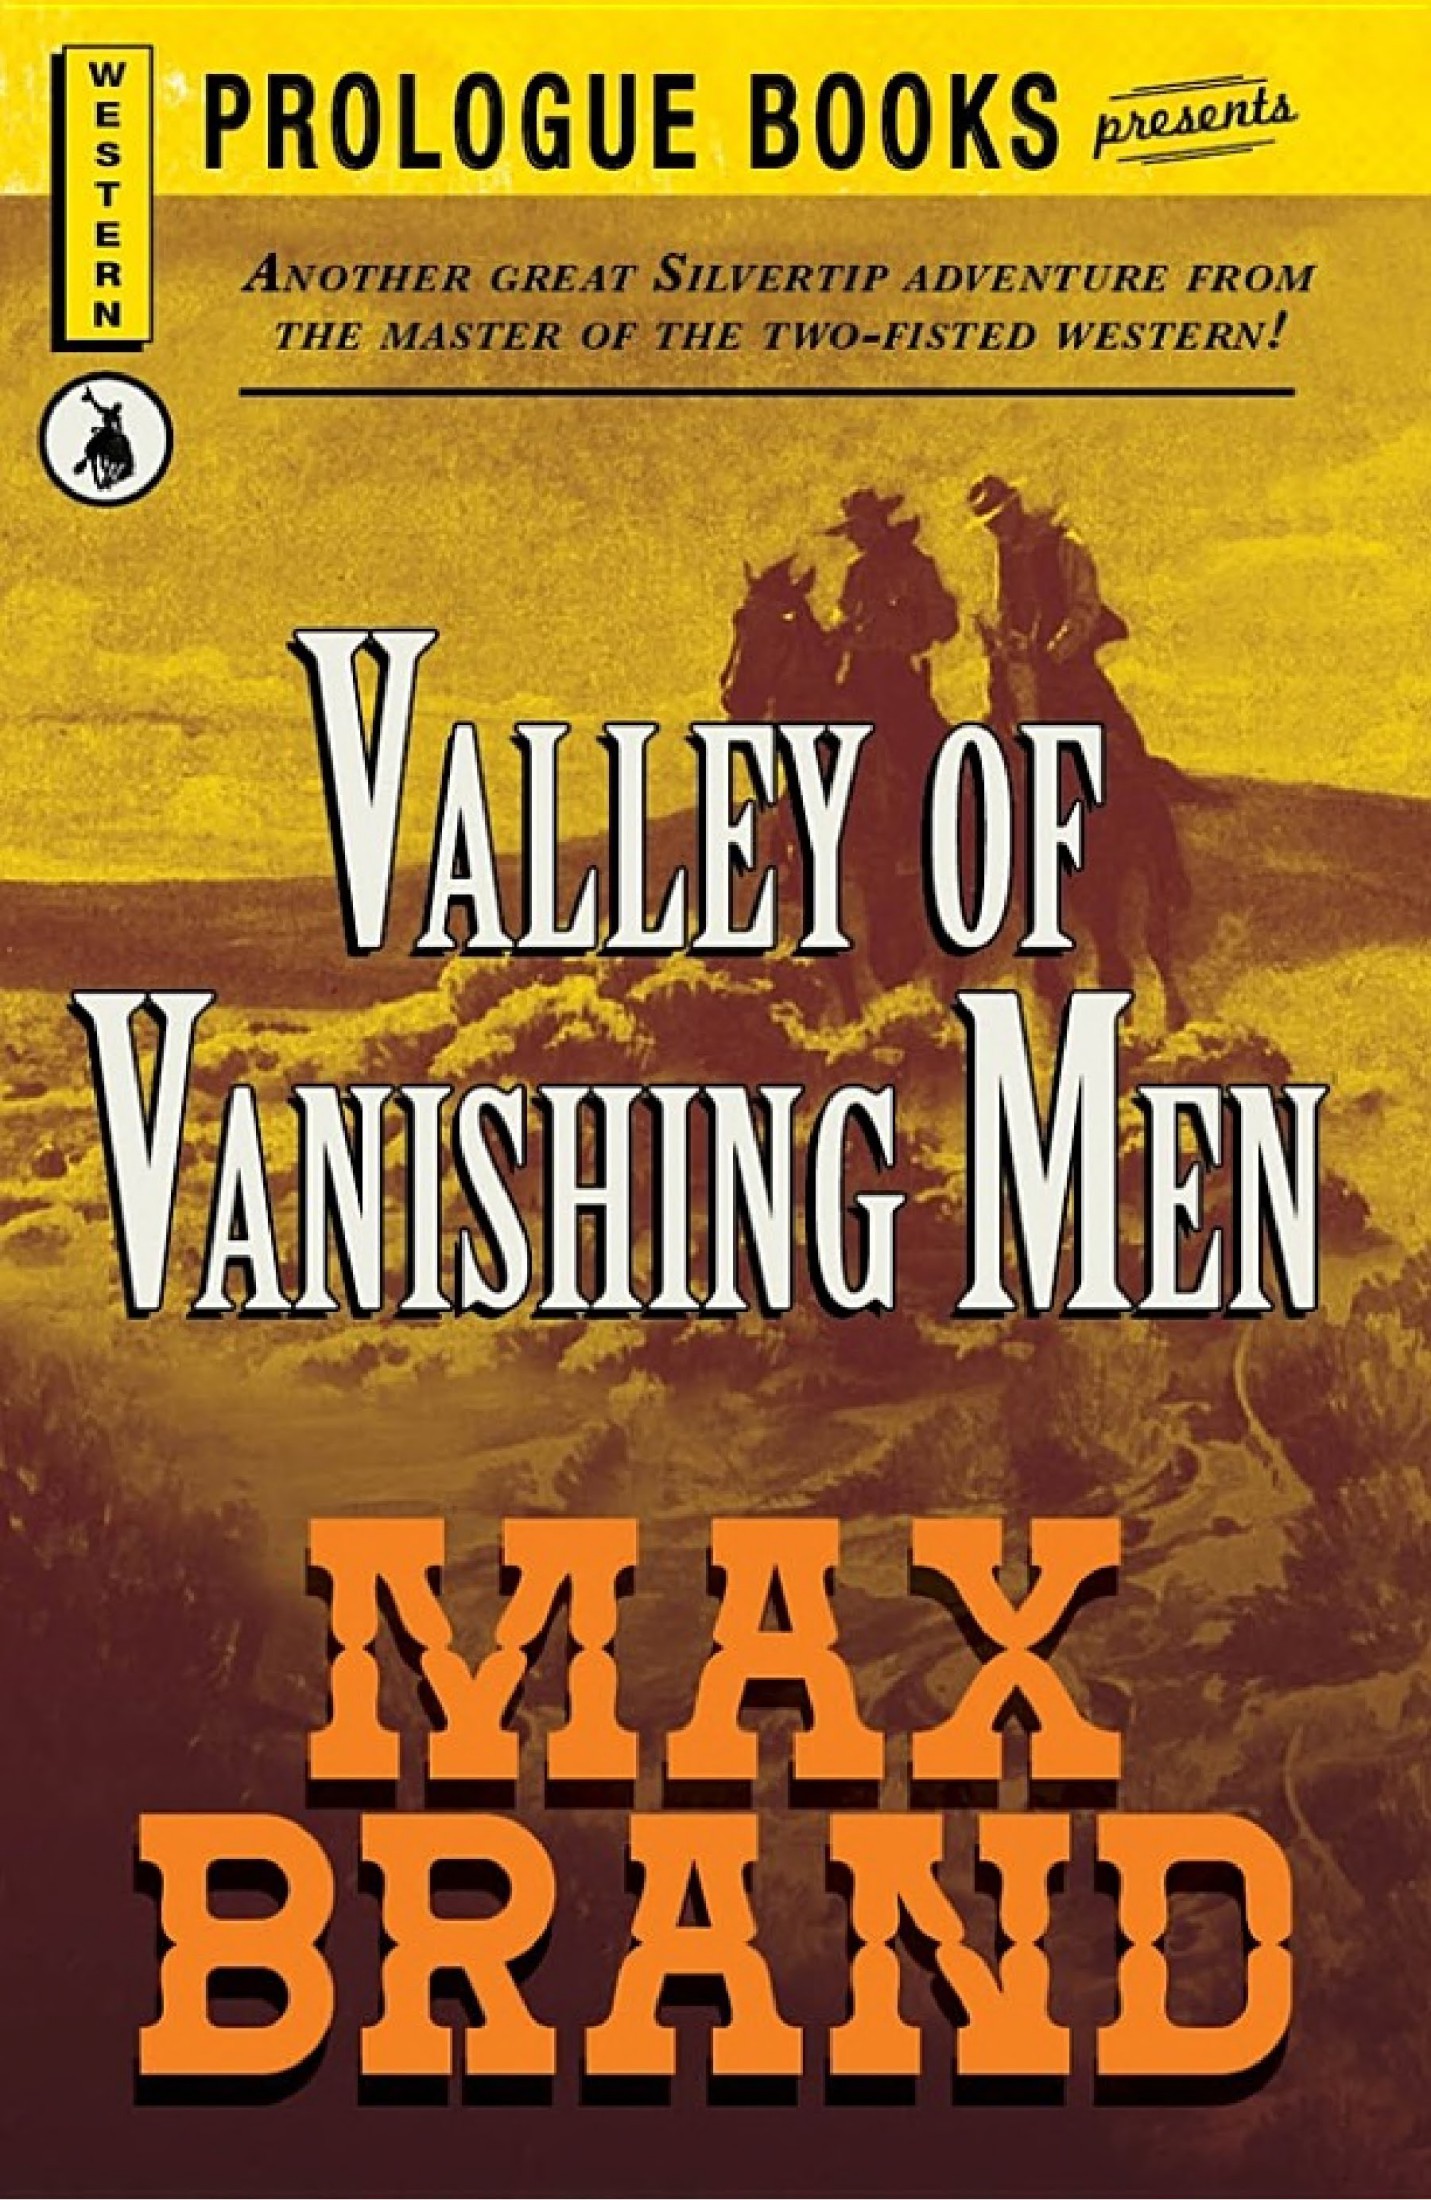 Valley of the Vanishing Men